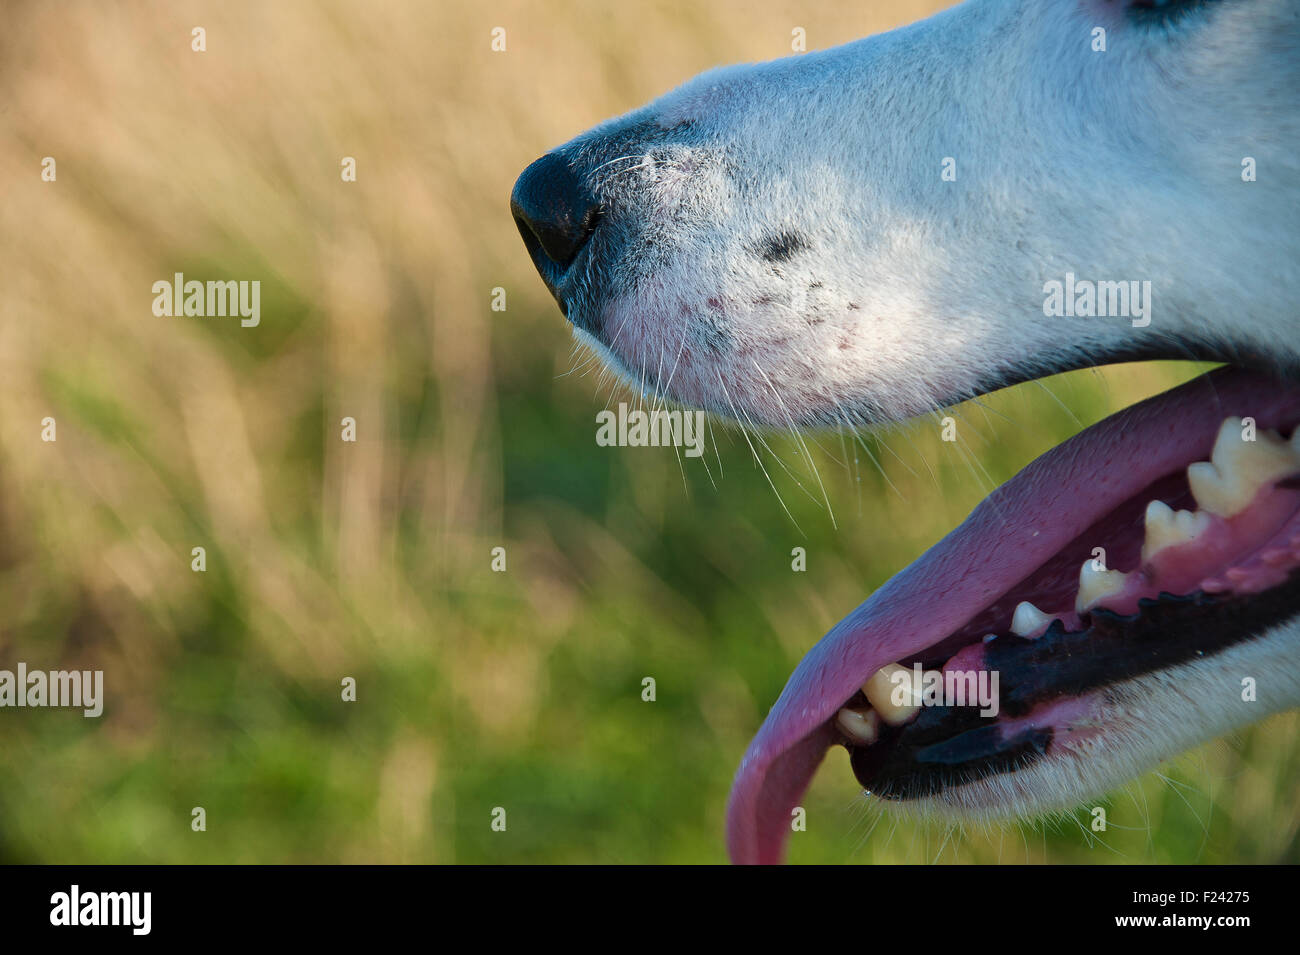 La bouche du chien, les dents, le nez, la langue, des yeux, de la mâchoire, canines et les narines de profil Banque D'Images